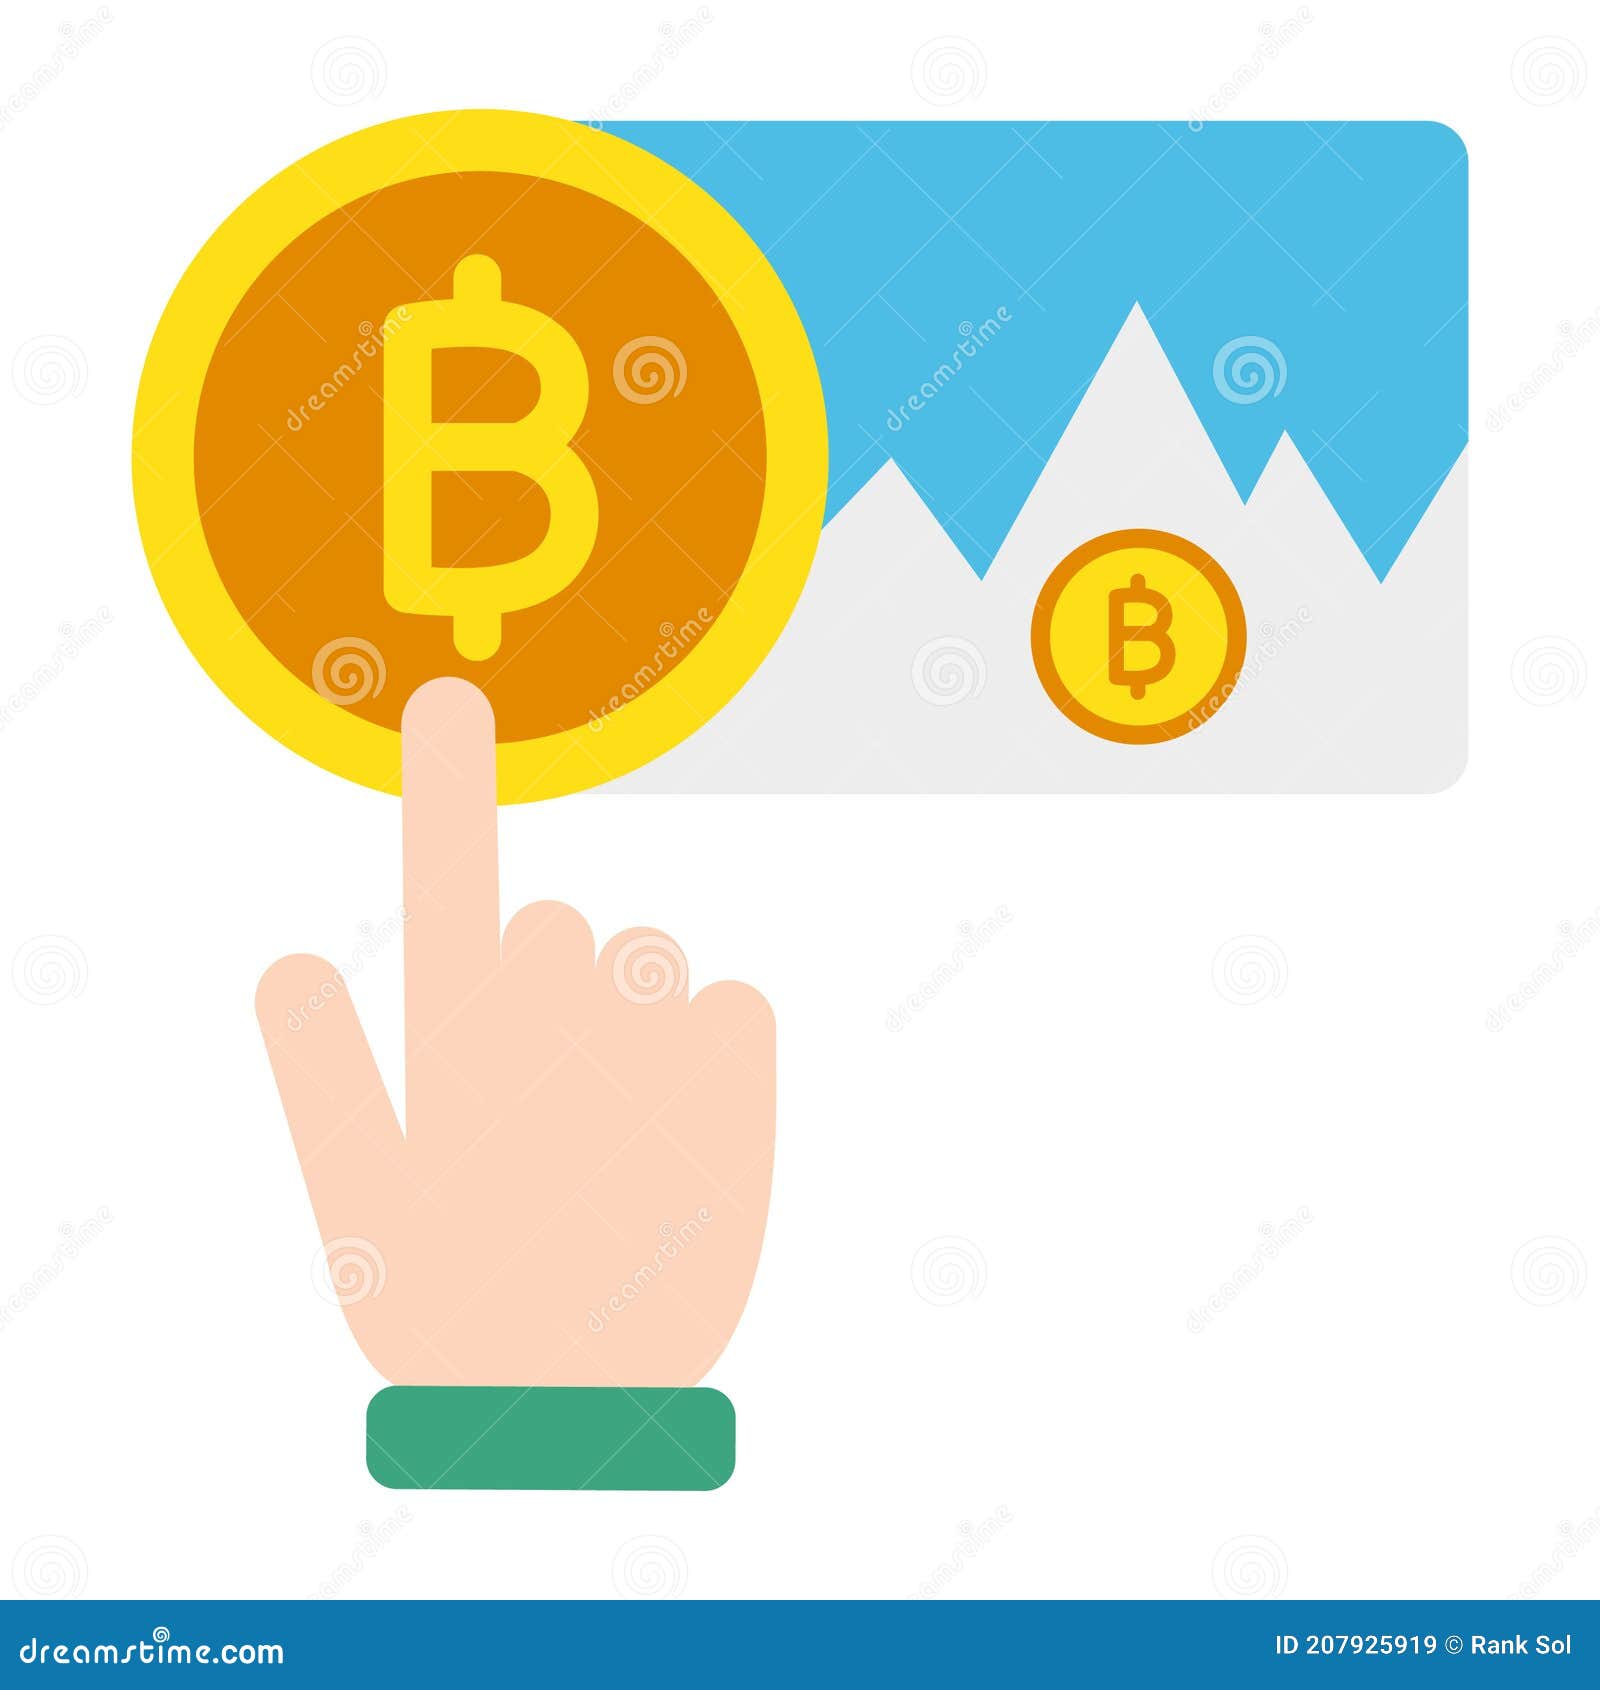 Bitcoin cash resources обмен валют в аннино